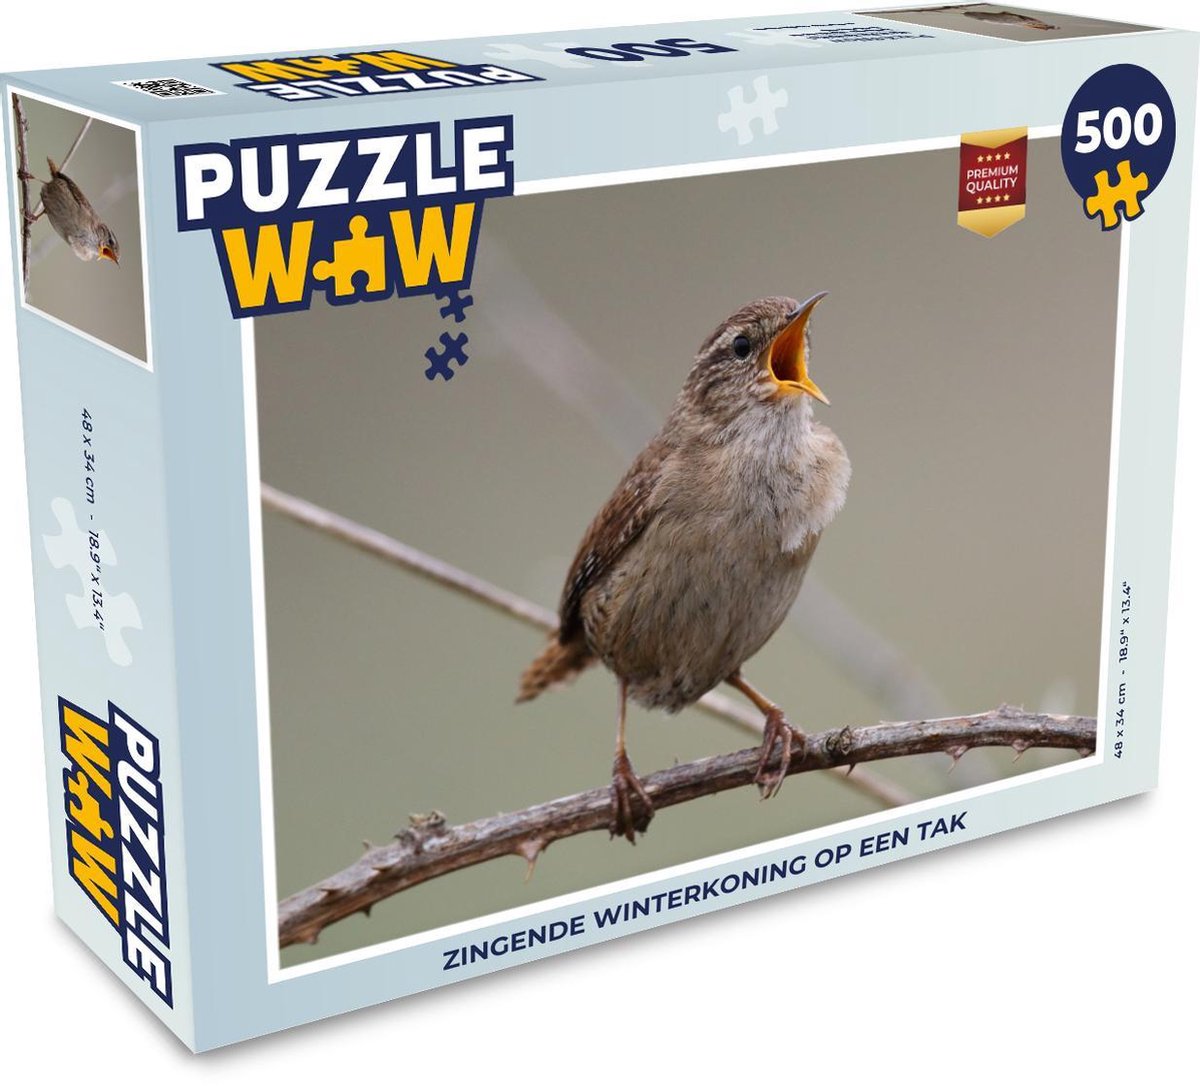 Afbeelding van product Puzzel 500 stukjes Winterkoning - Zingende winterkoning op een tak - PuzzleWow heeft +100000 puzzels